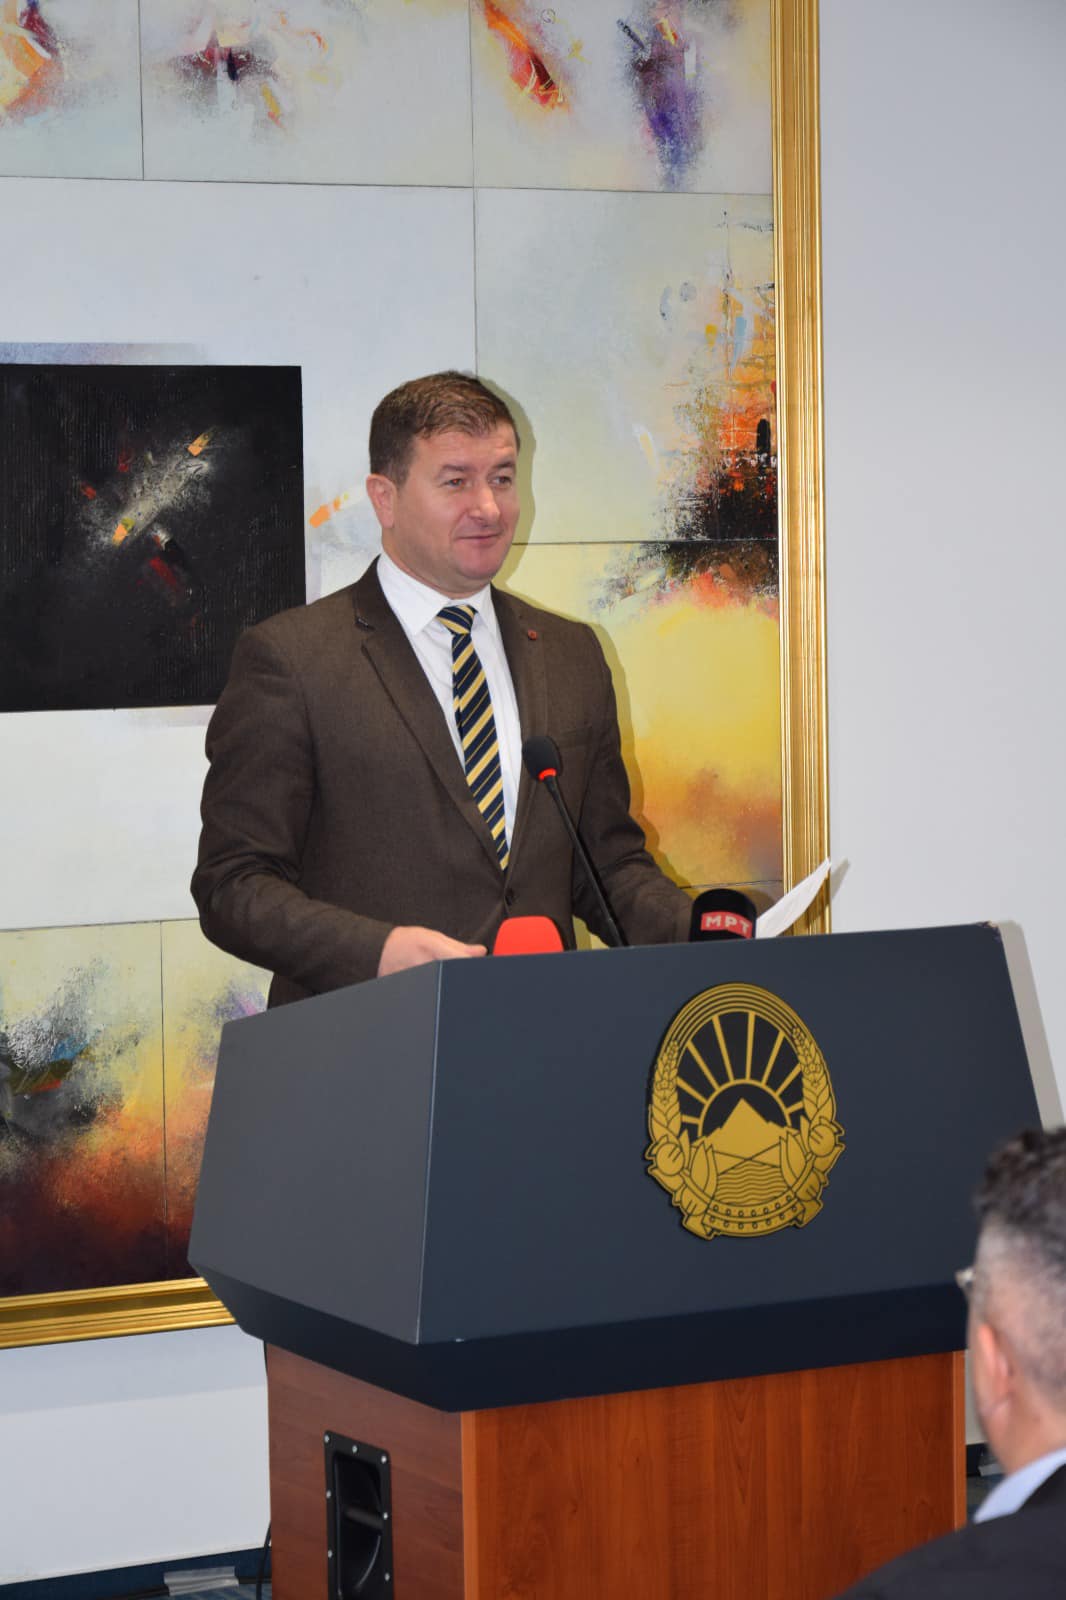 Drejtori i AZGJ-së, Ylber Sela u paraqit me kumtesë në konferencën “Studimet albanologjike në gjuhën gjermane”